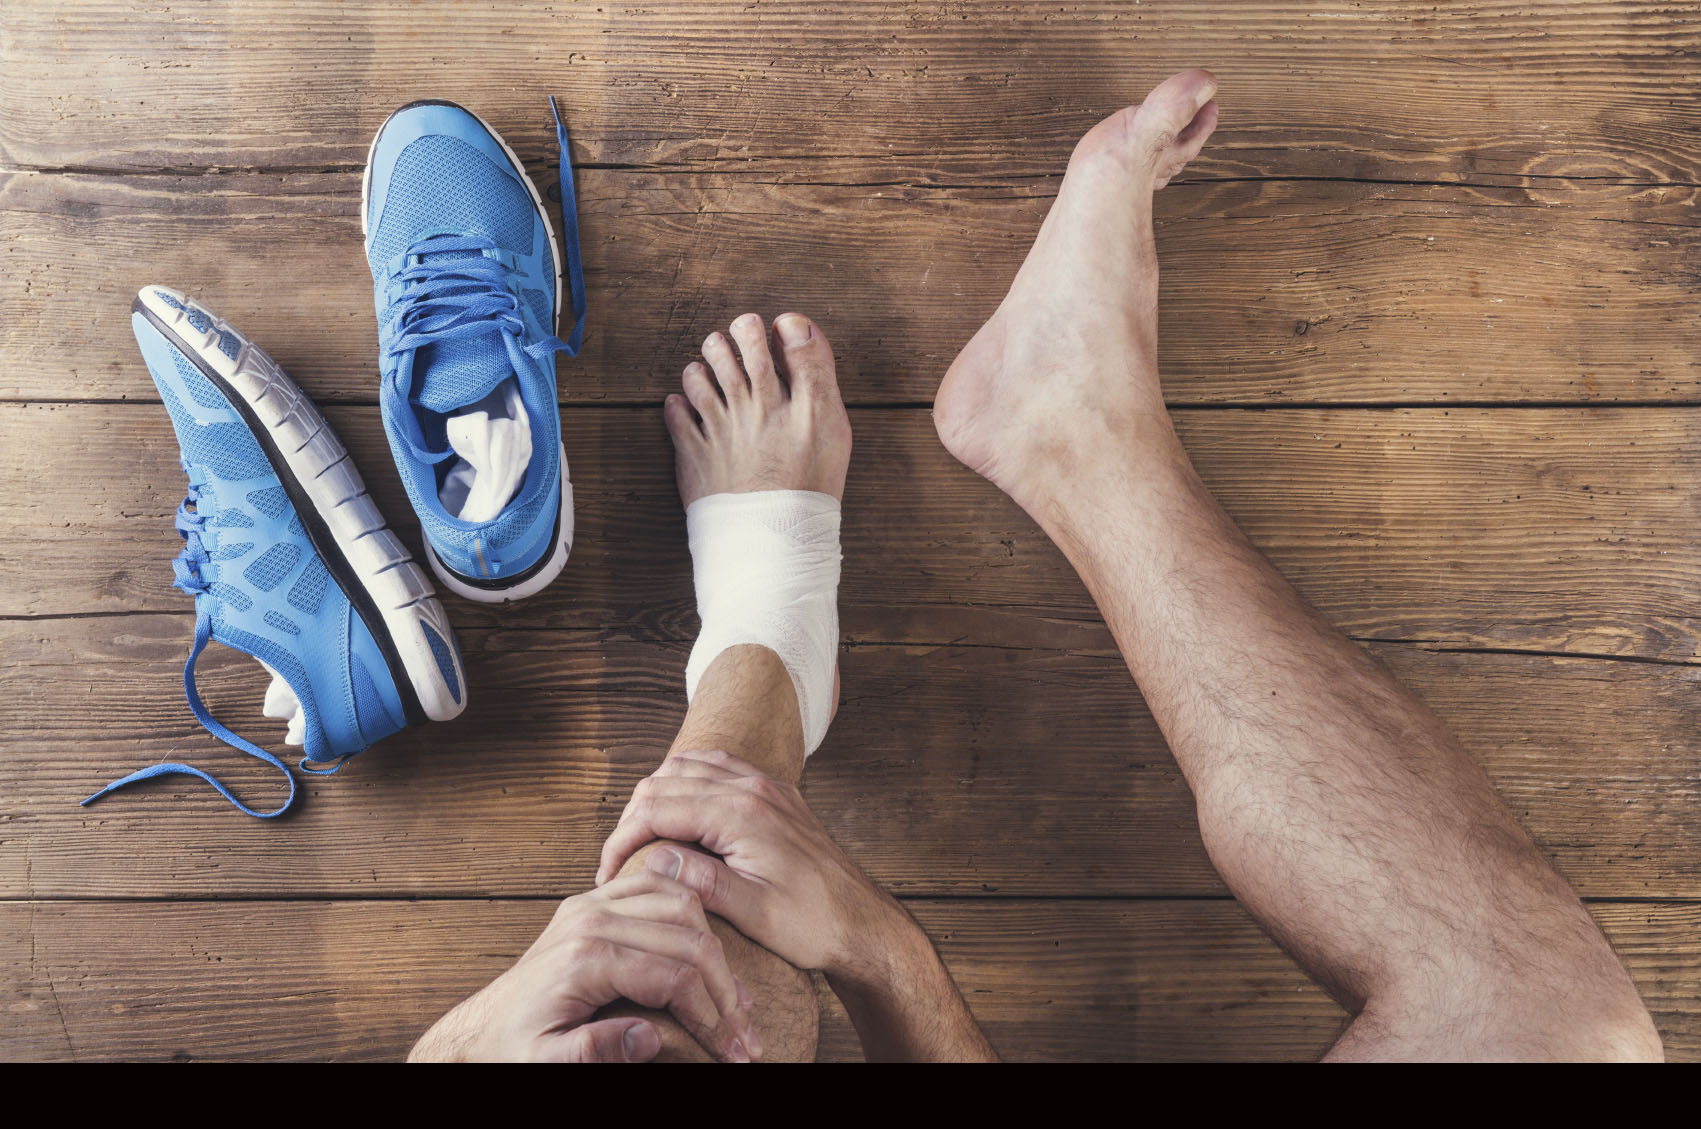 Los corredores suelen pensar que mientras más nuevo o costoso sea el zapato, menos propensos serán a lesiones y no es cierto